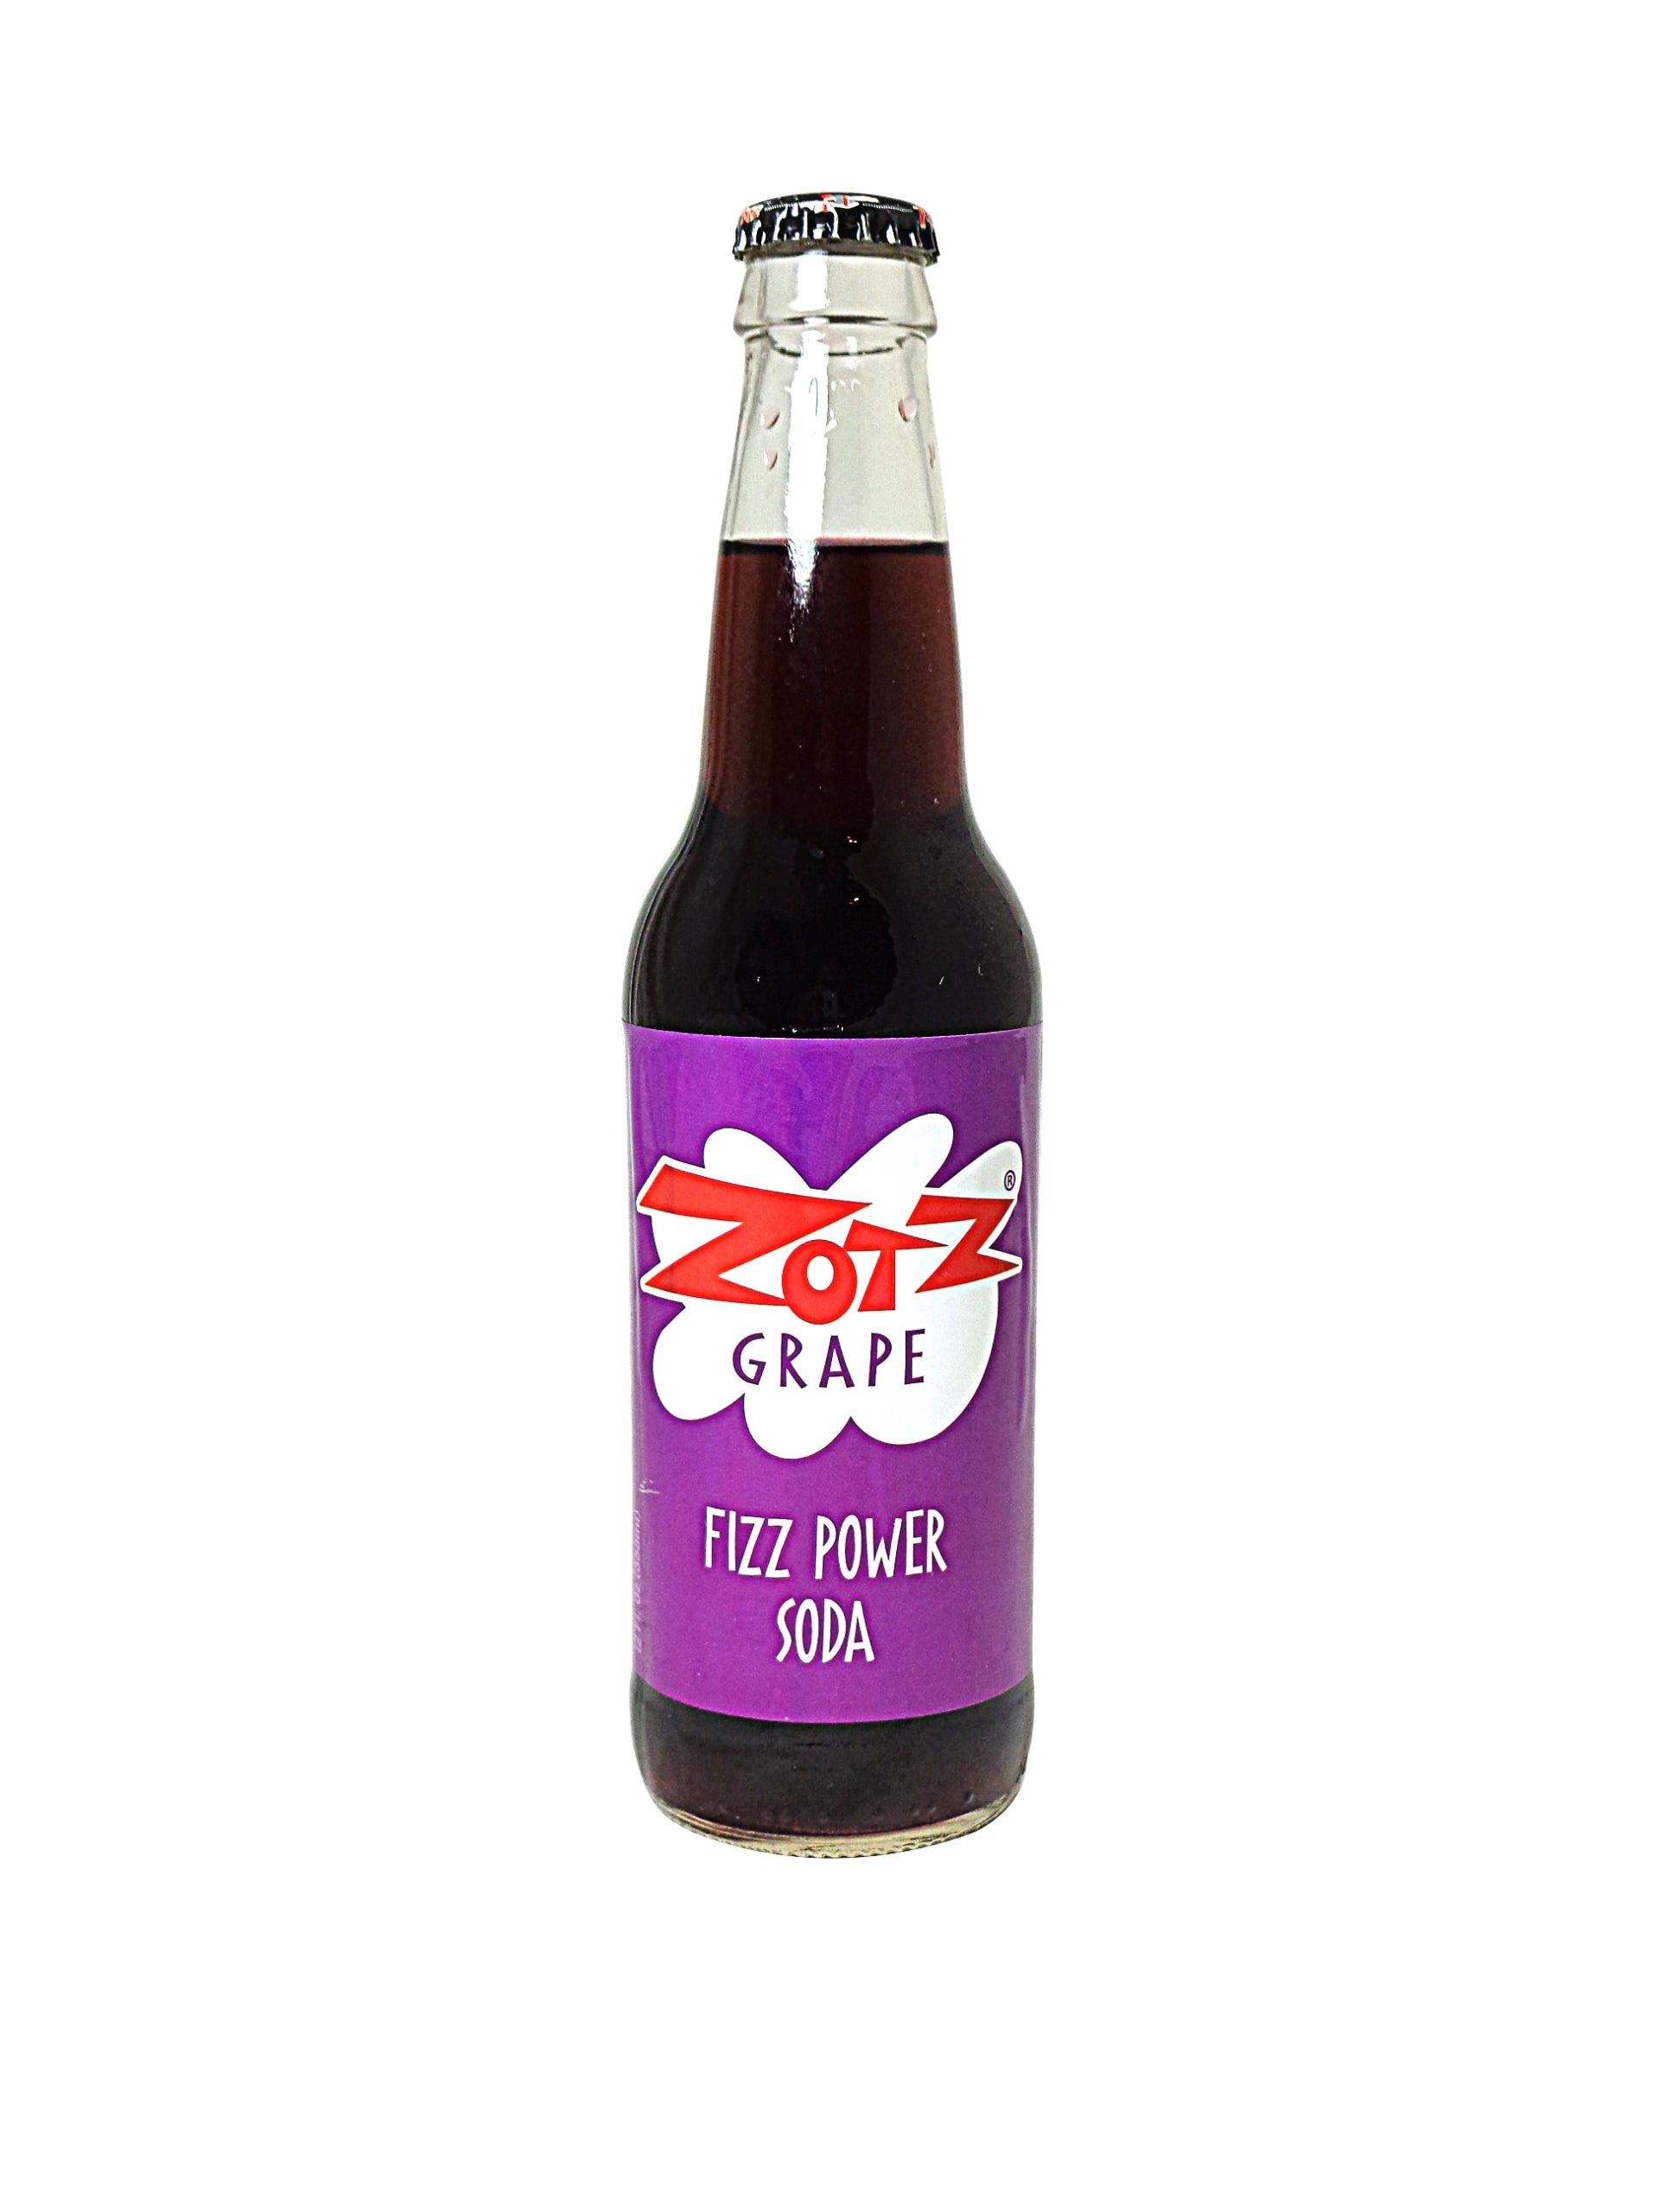 Zotz Grape Fizz Power Soda